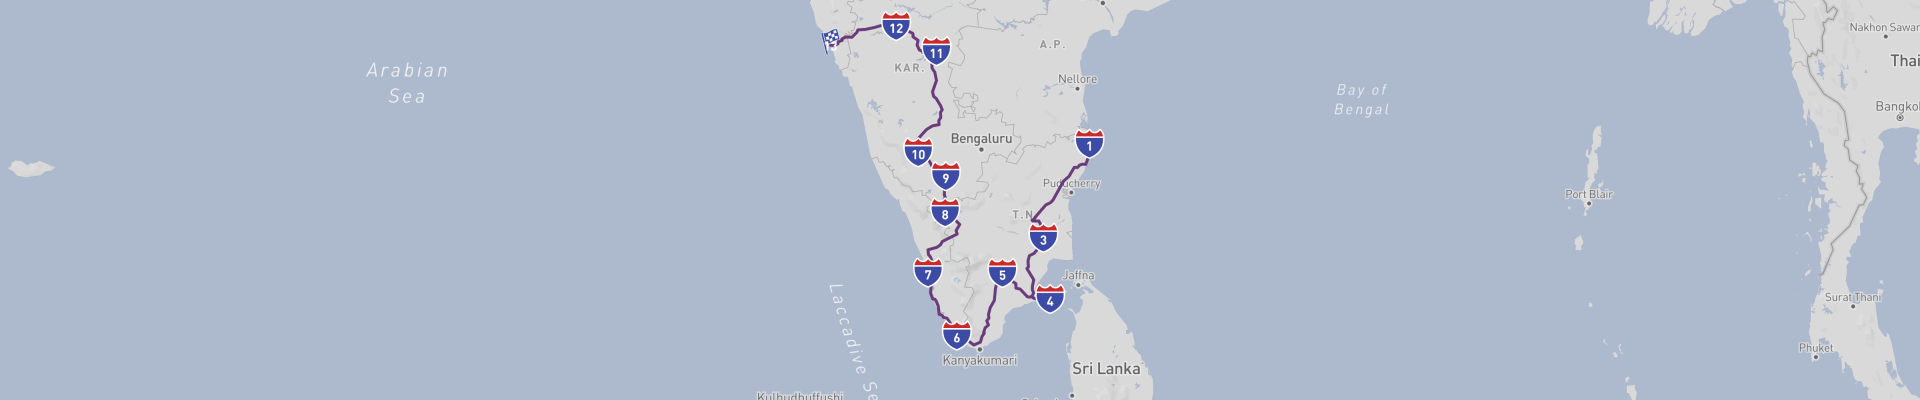 南印度之旅